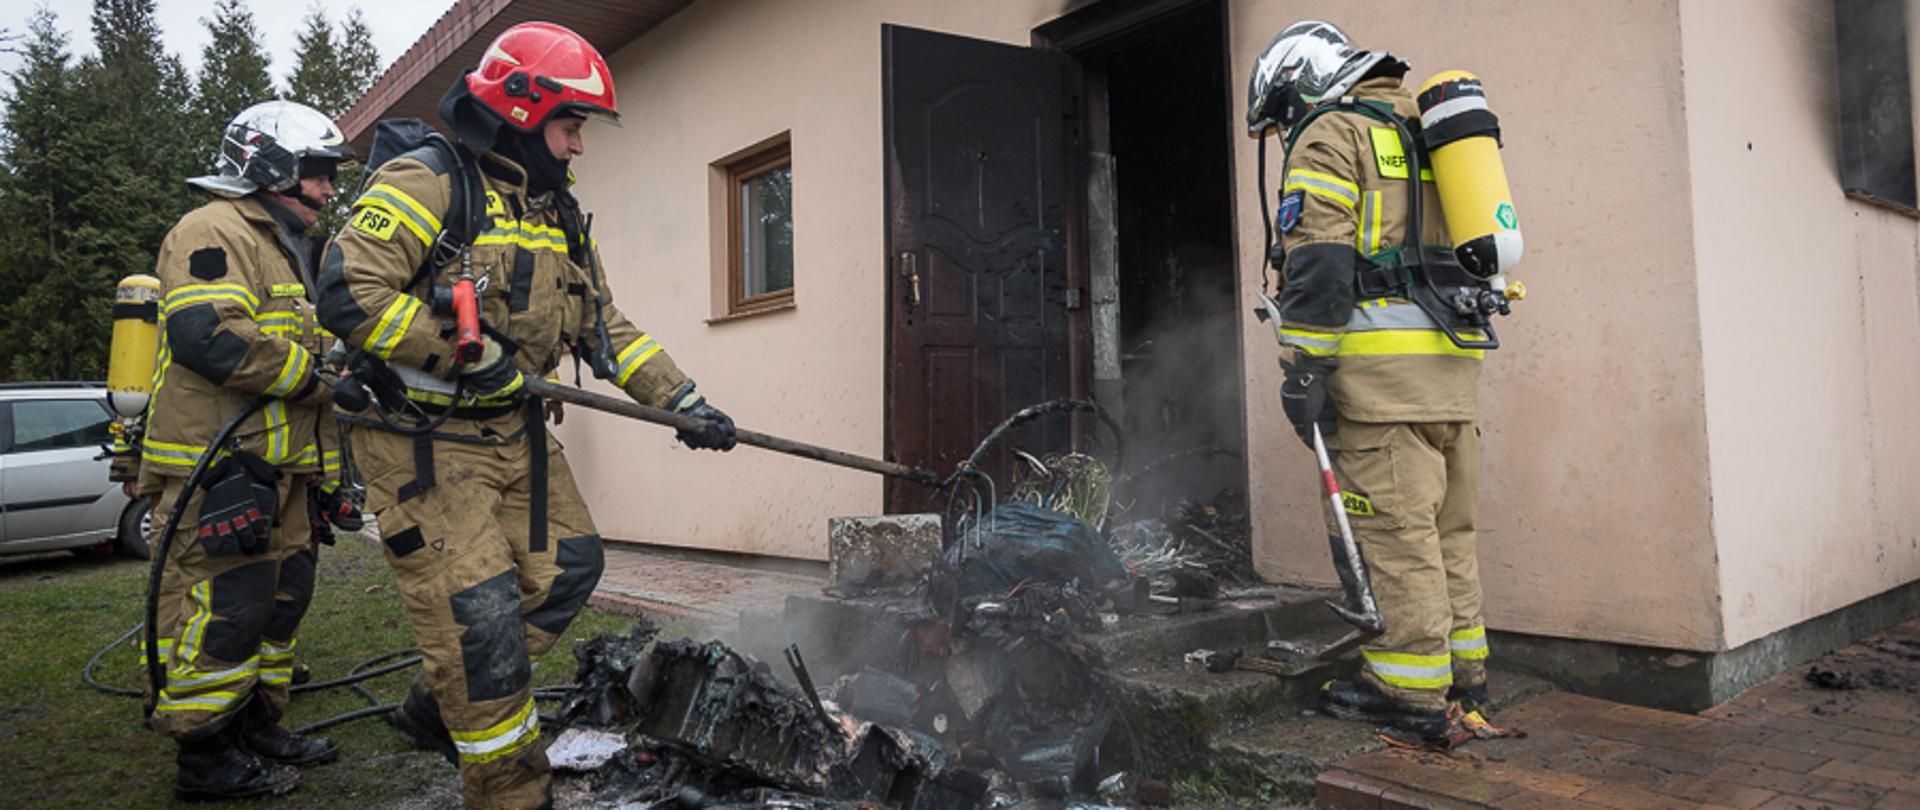 Trzech strażaków wyciąga z wnętrza kotłowni spalone wyposażenie.